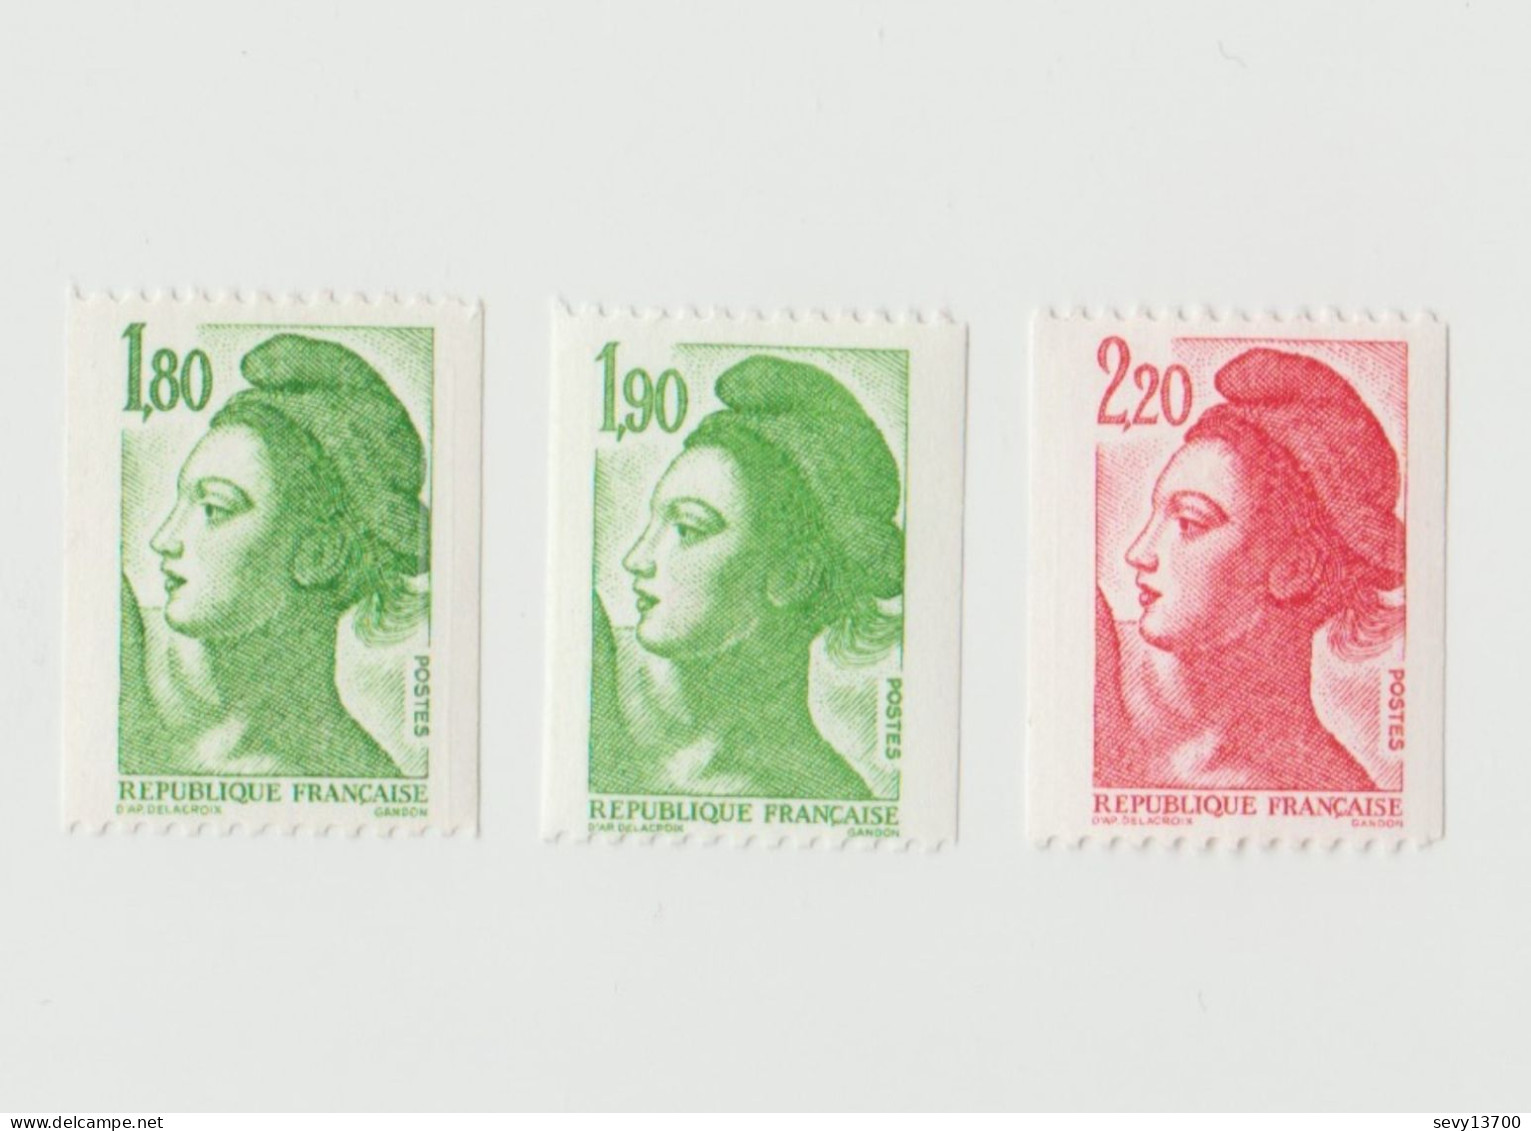 France 1982 3 Timbres Neufs Yvert Tellier N° 2378e 2426a 2379k Liberté De Delacroix Bande Phosphore Numéro Rouge Au Dos - Coil Stamps